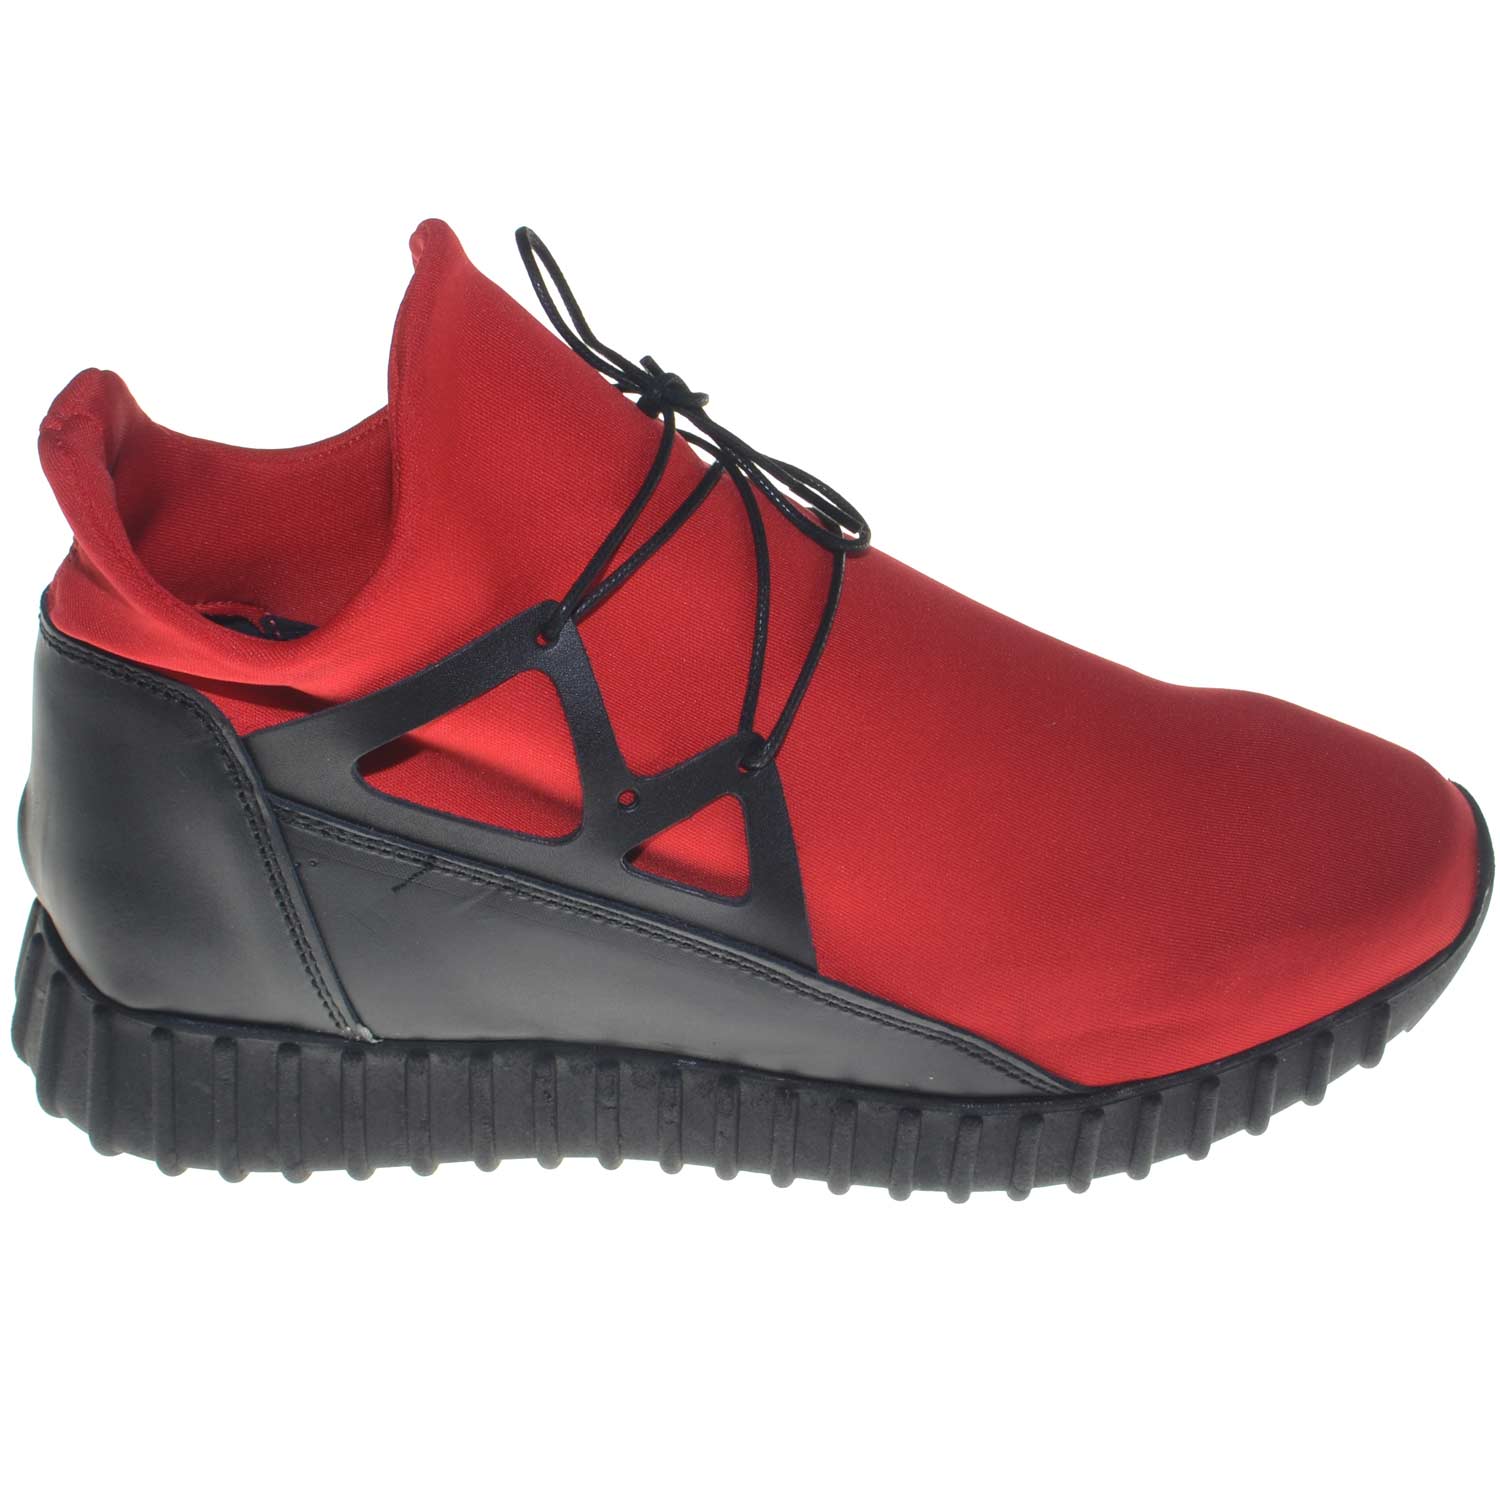 Scarpe uomo sneakers bassa tomaia in vera pelle e tessuto lycra rosso stringate fondo made in italy antiscivolo comfort .